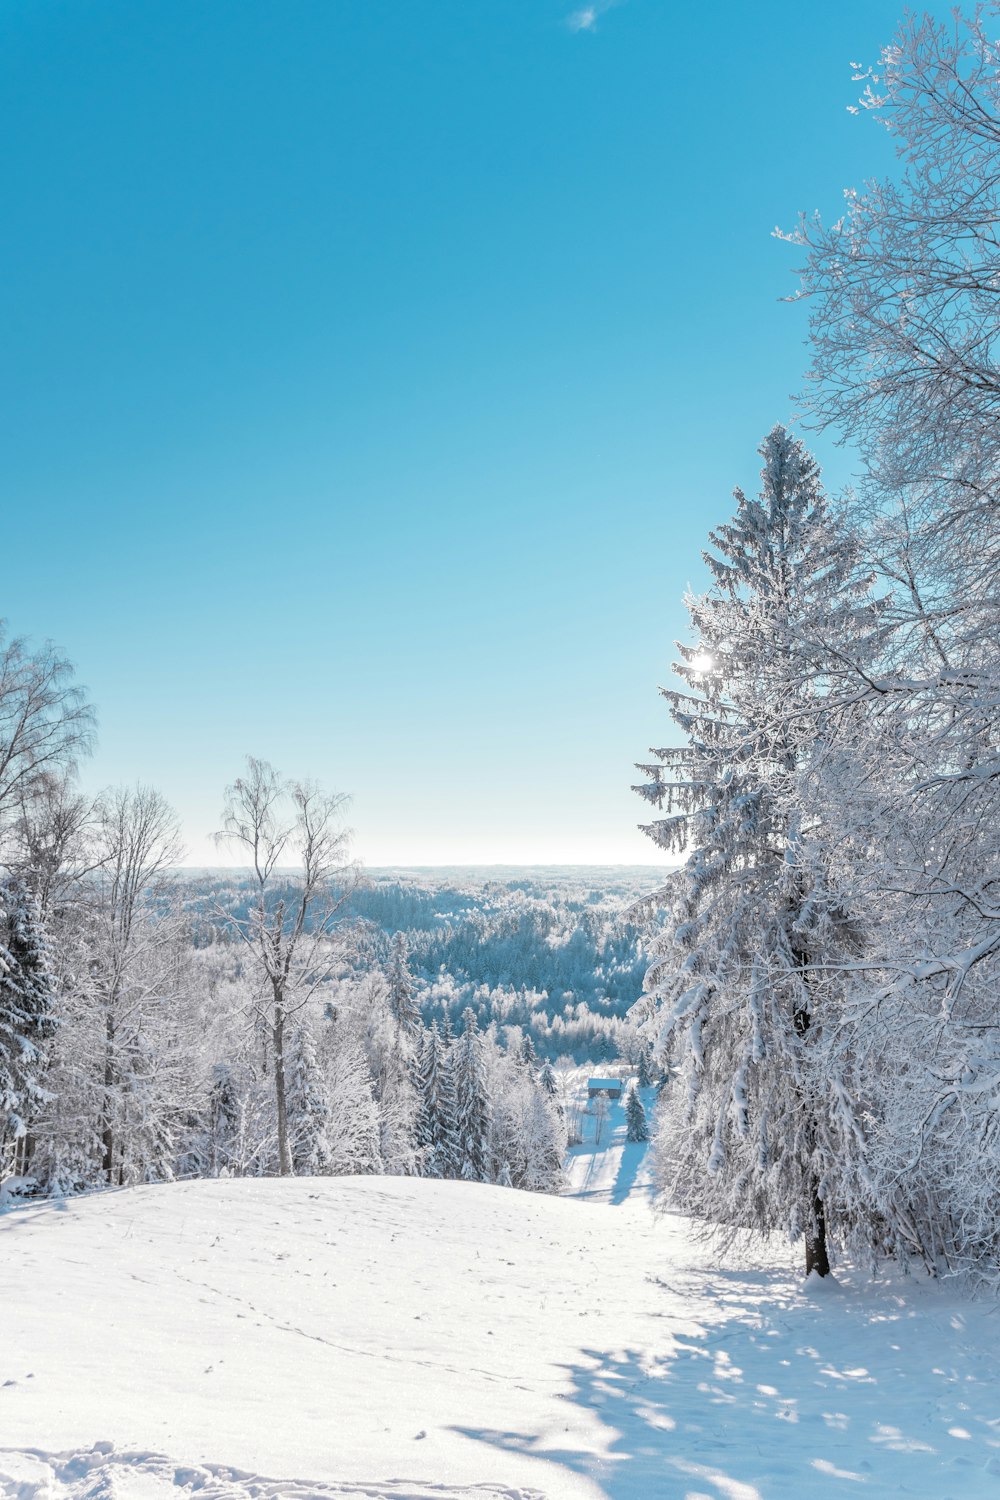 Un paisaje nevado con árboles y un cielo azul